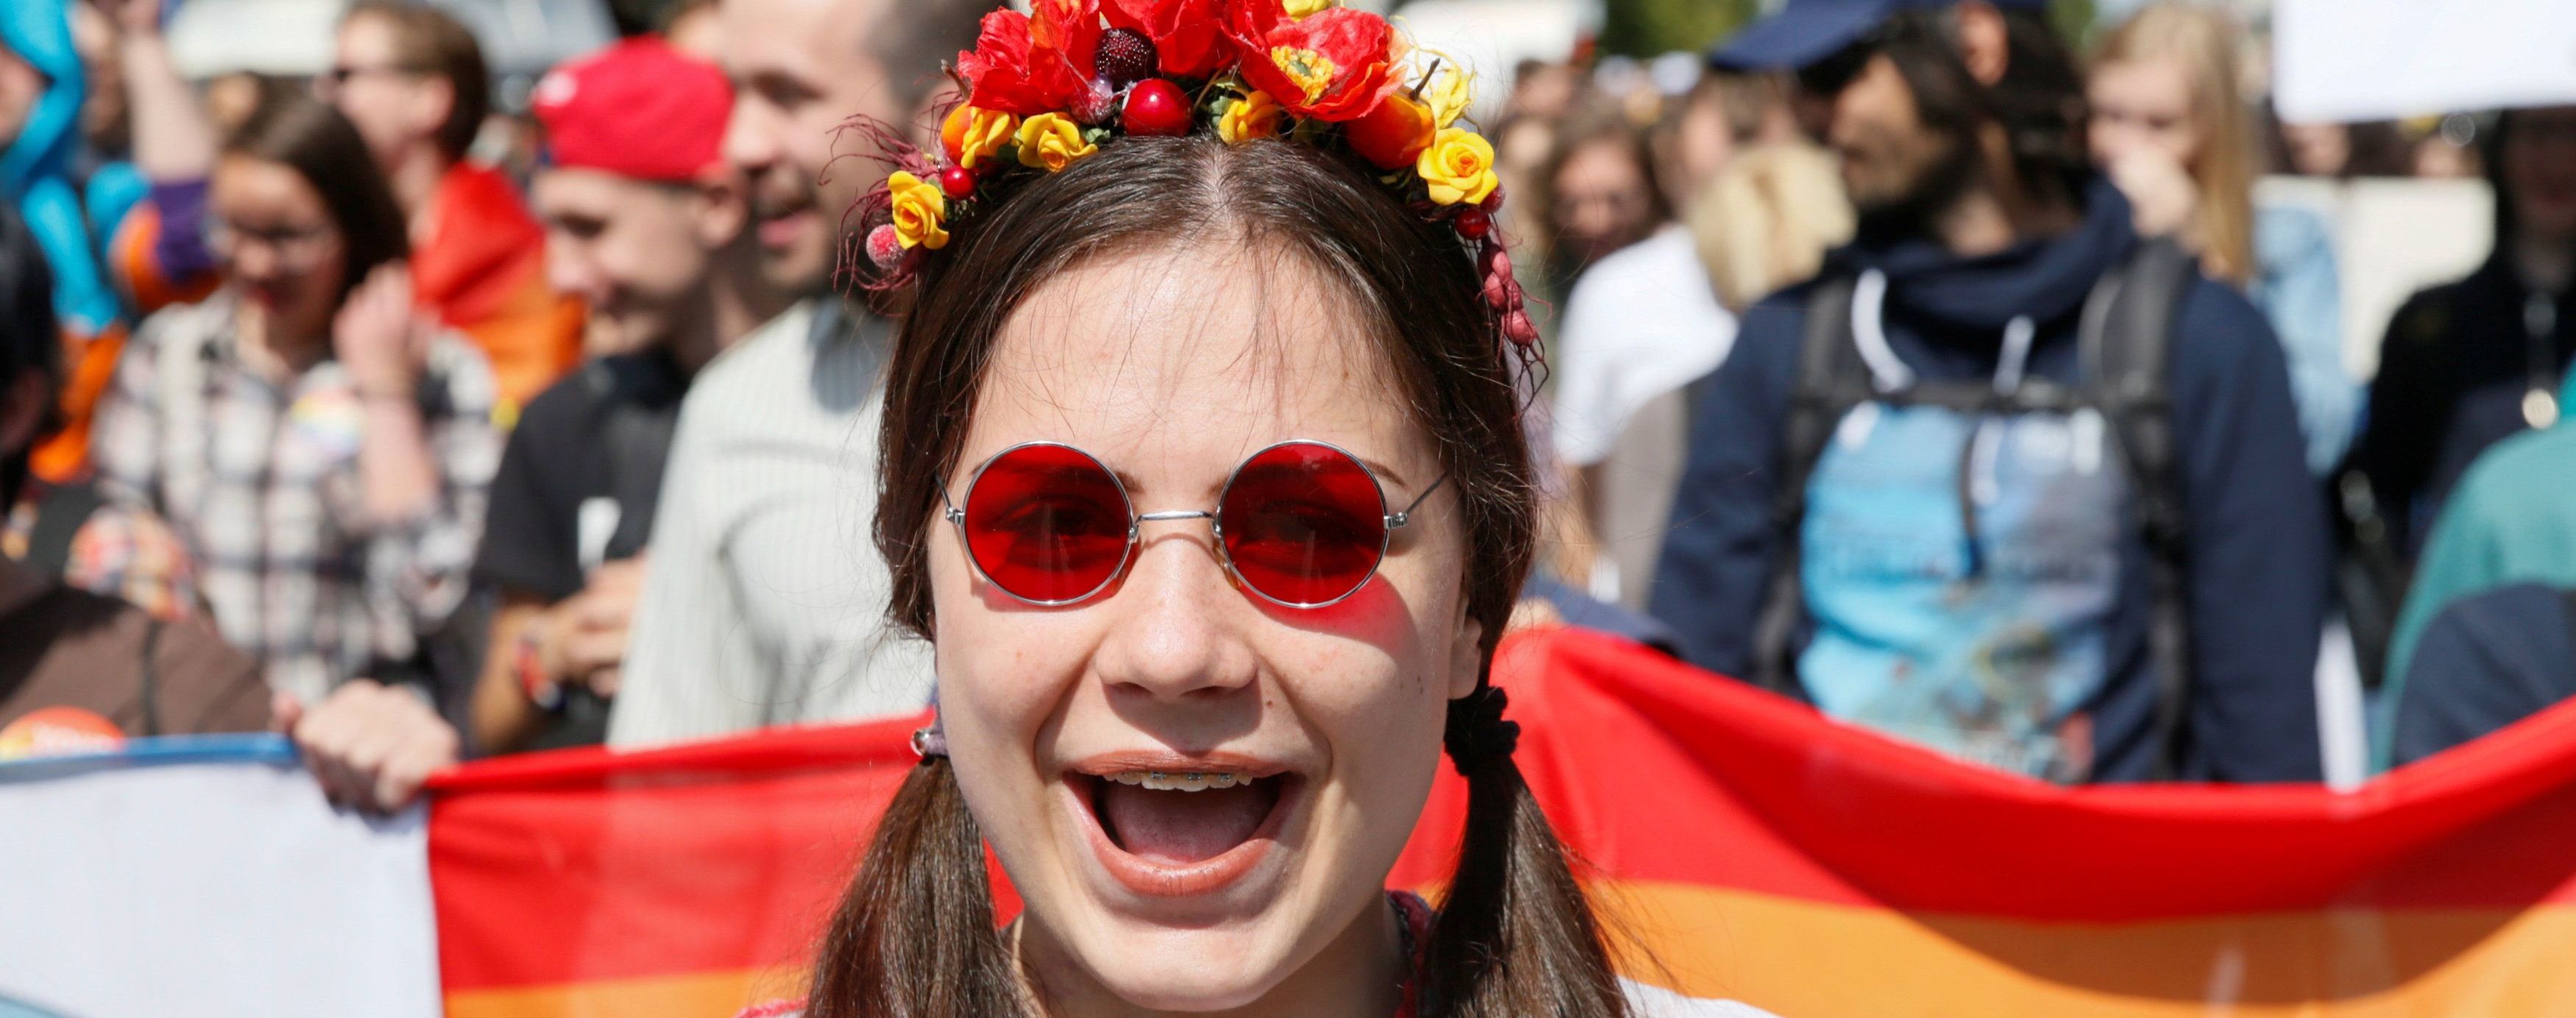 "Марш равенства" в Киеве: смотрите, как ЛГБТ-сообщество выступало за свои права